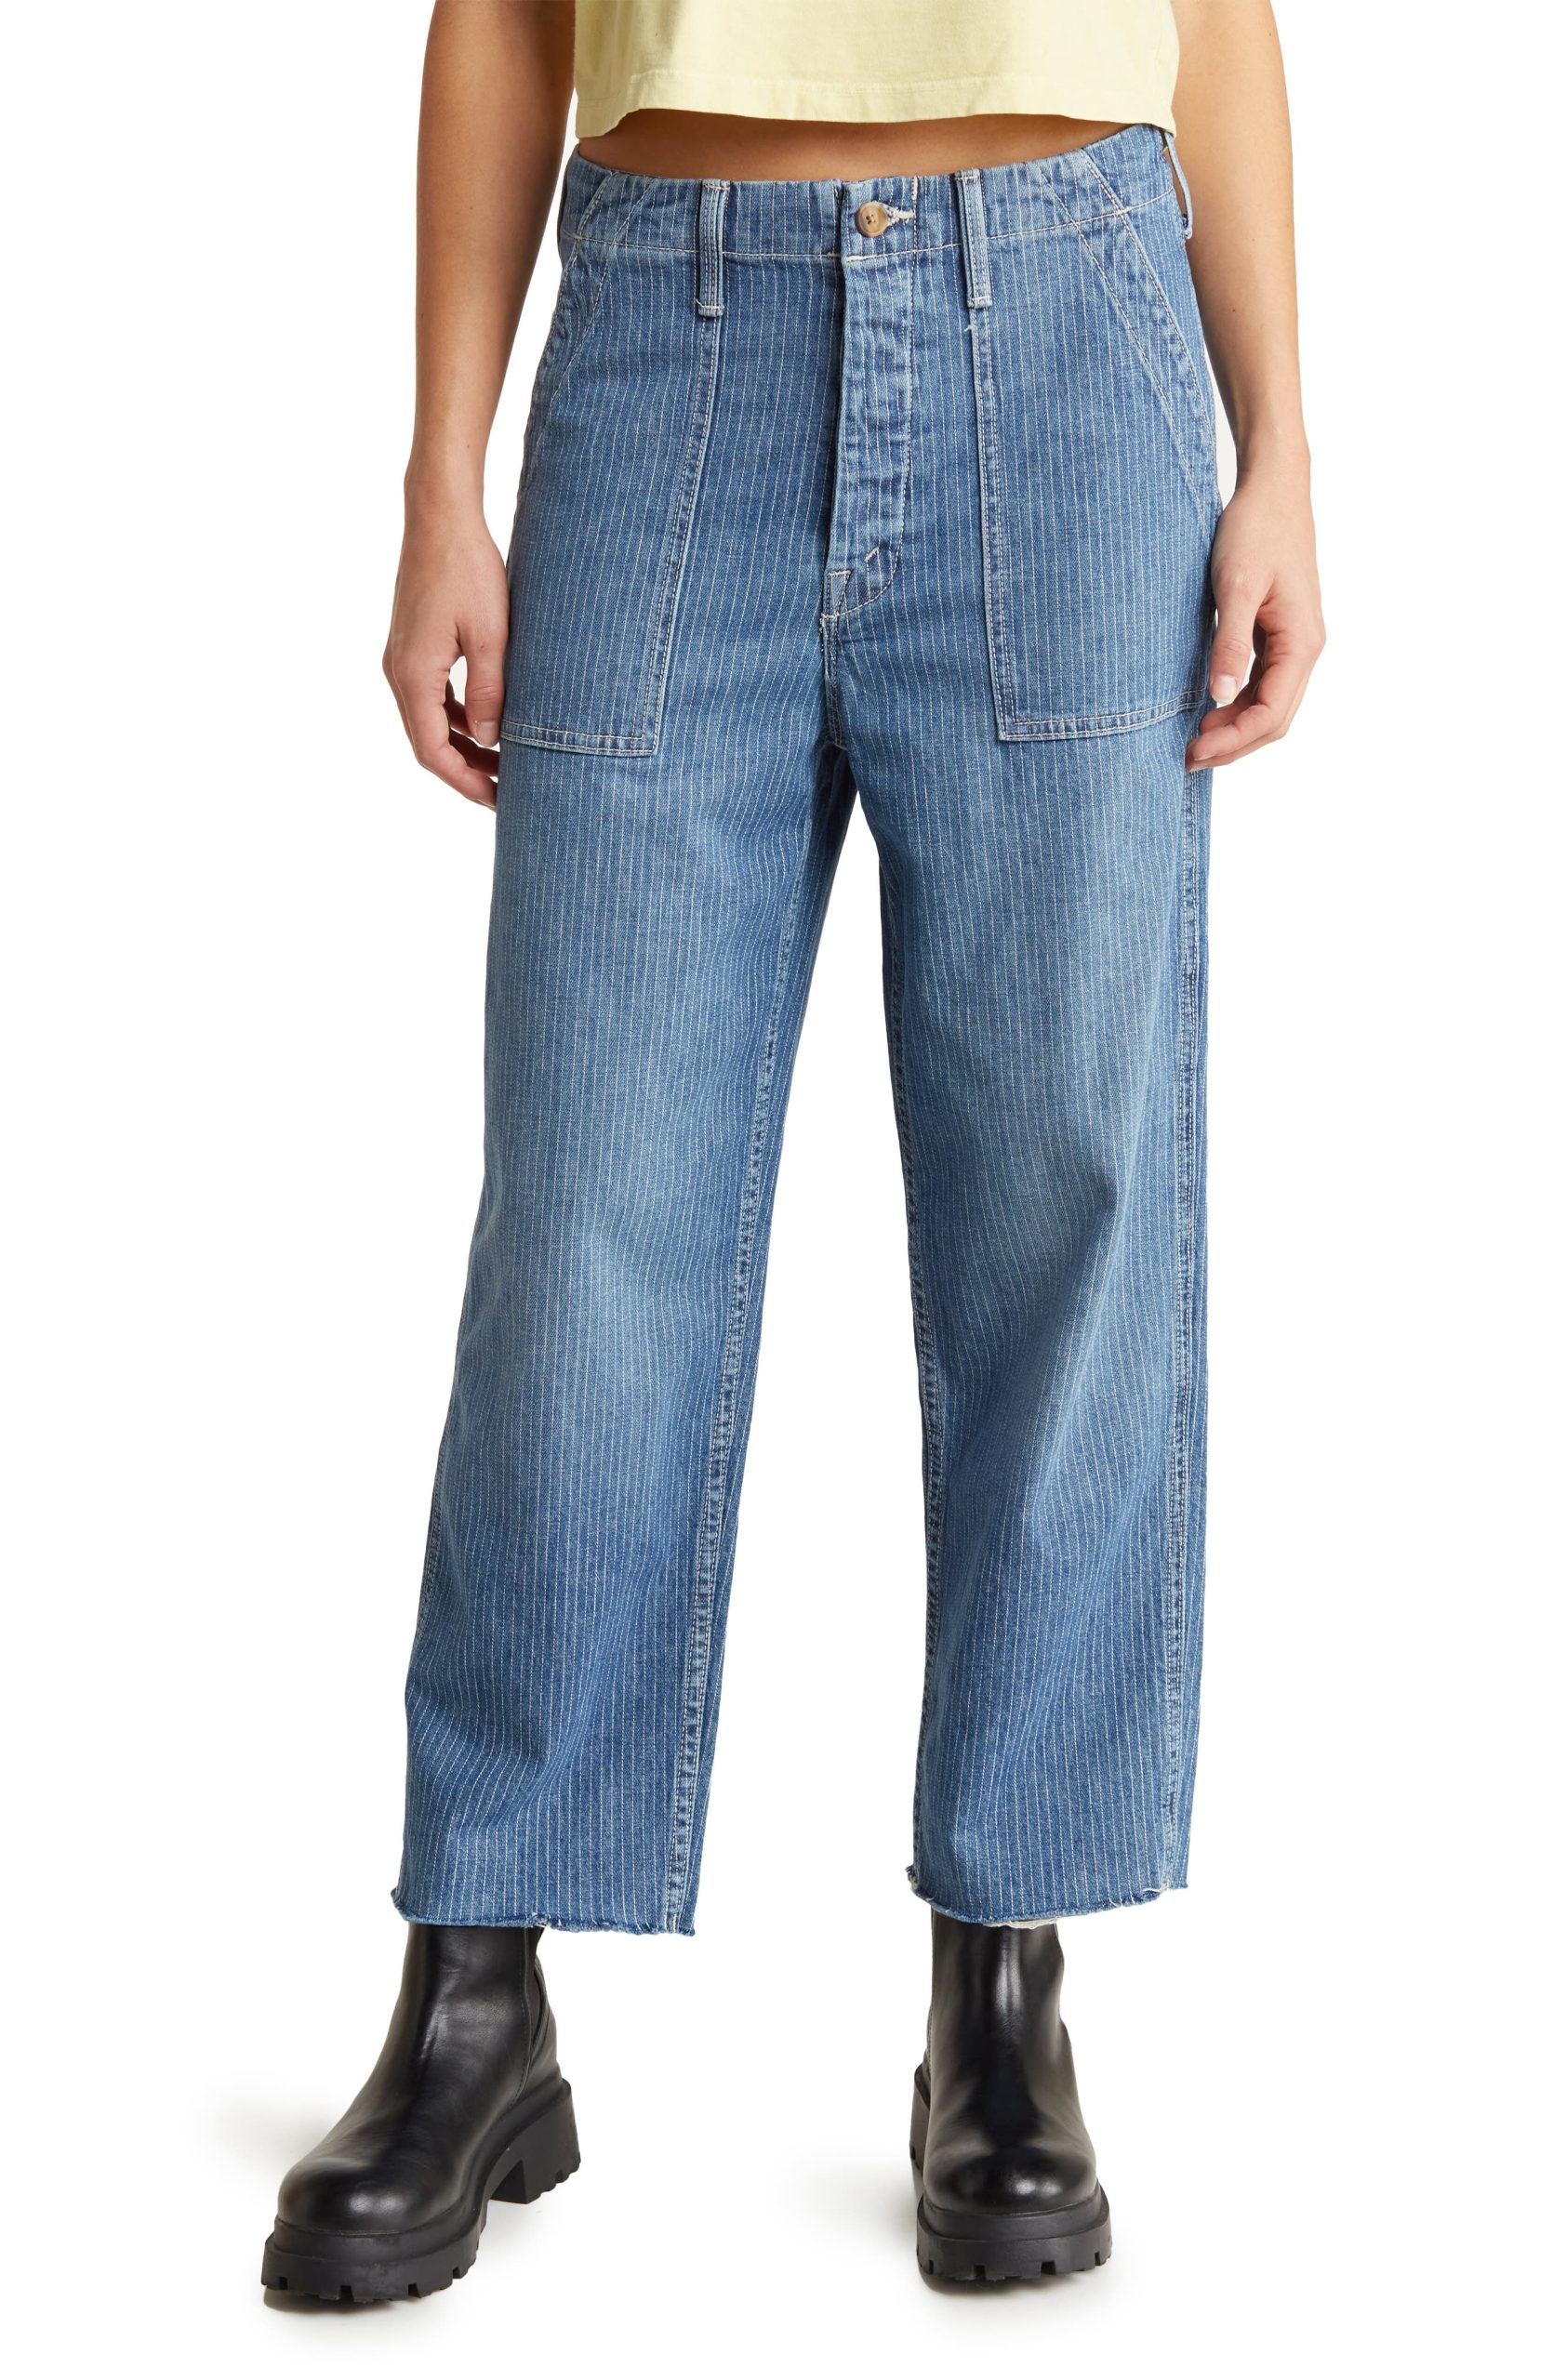 Nordstrom rack mother jeans